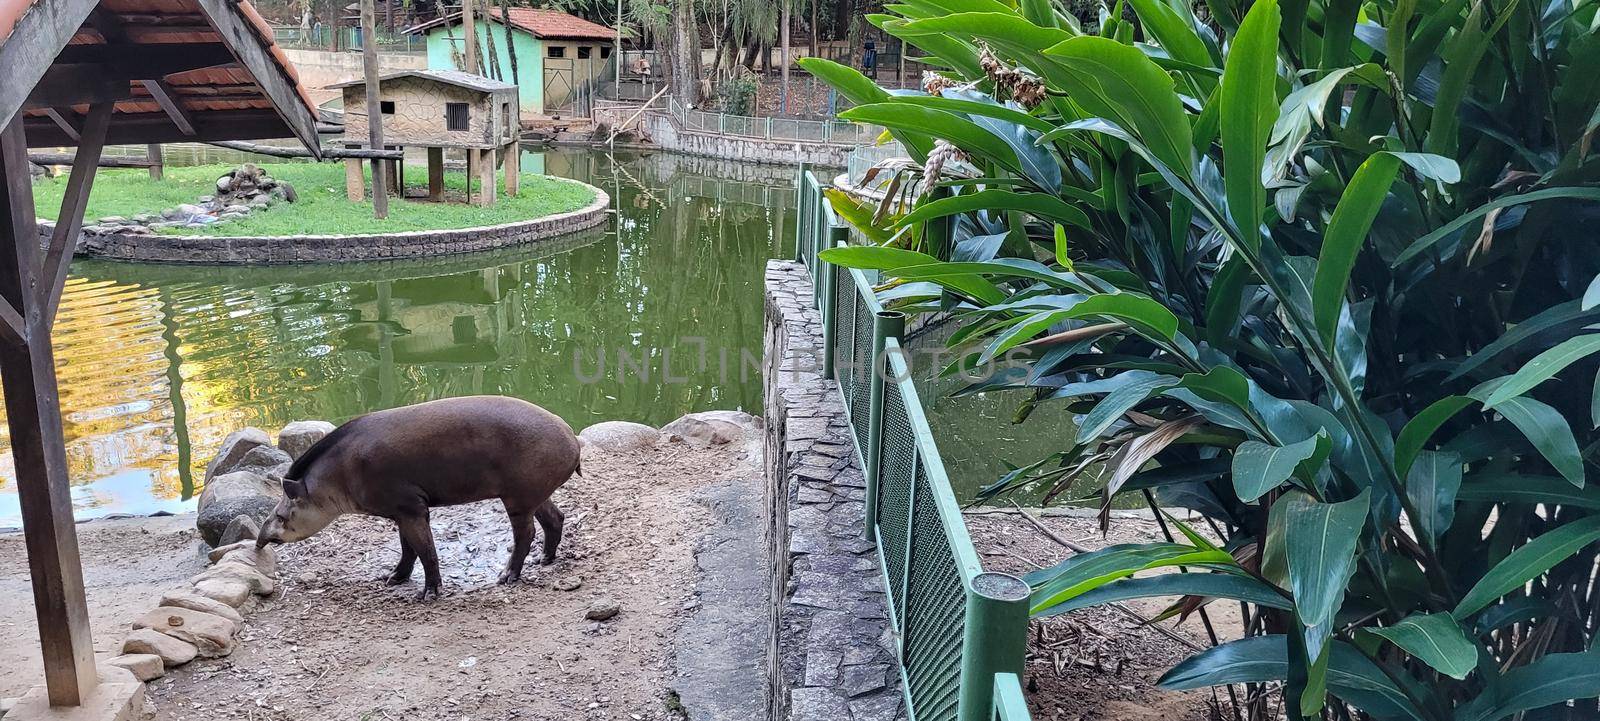 Brazilian tapir in zoo in tropical lagoon by sarsa